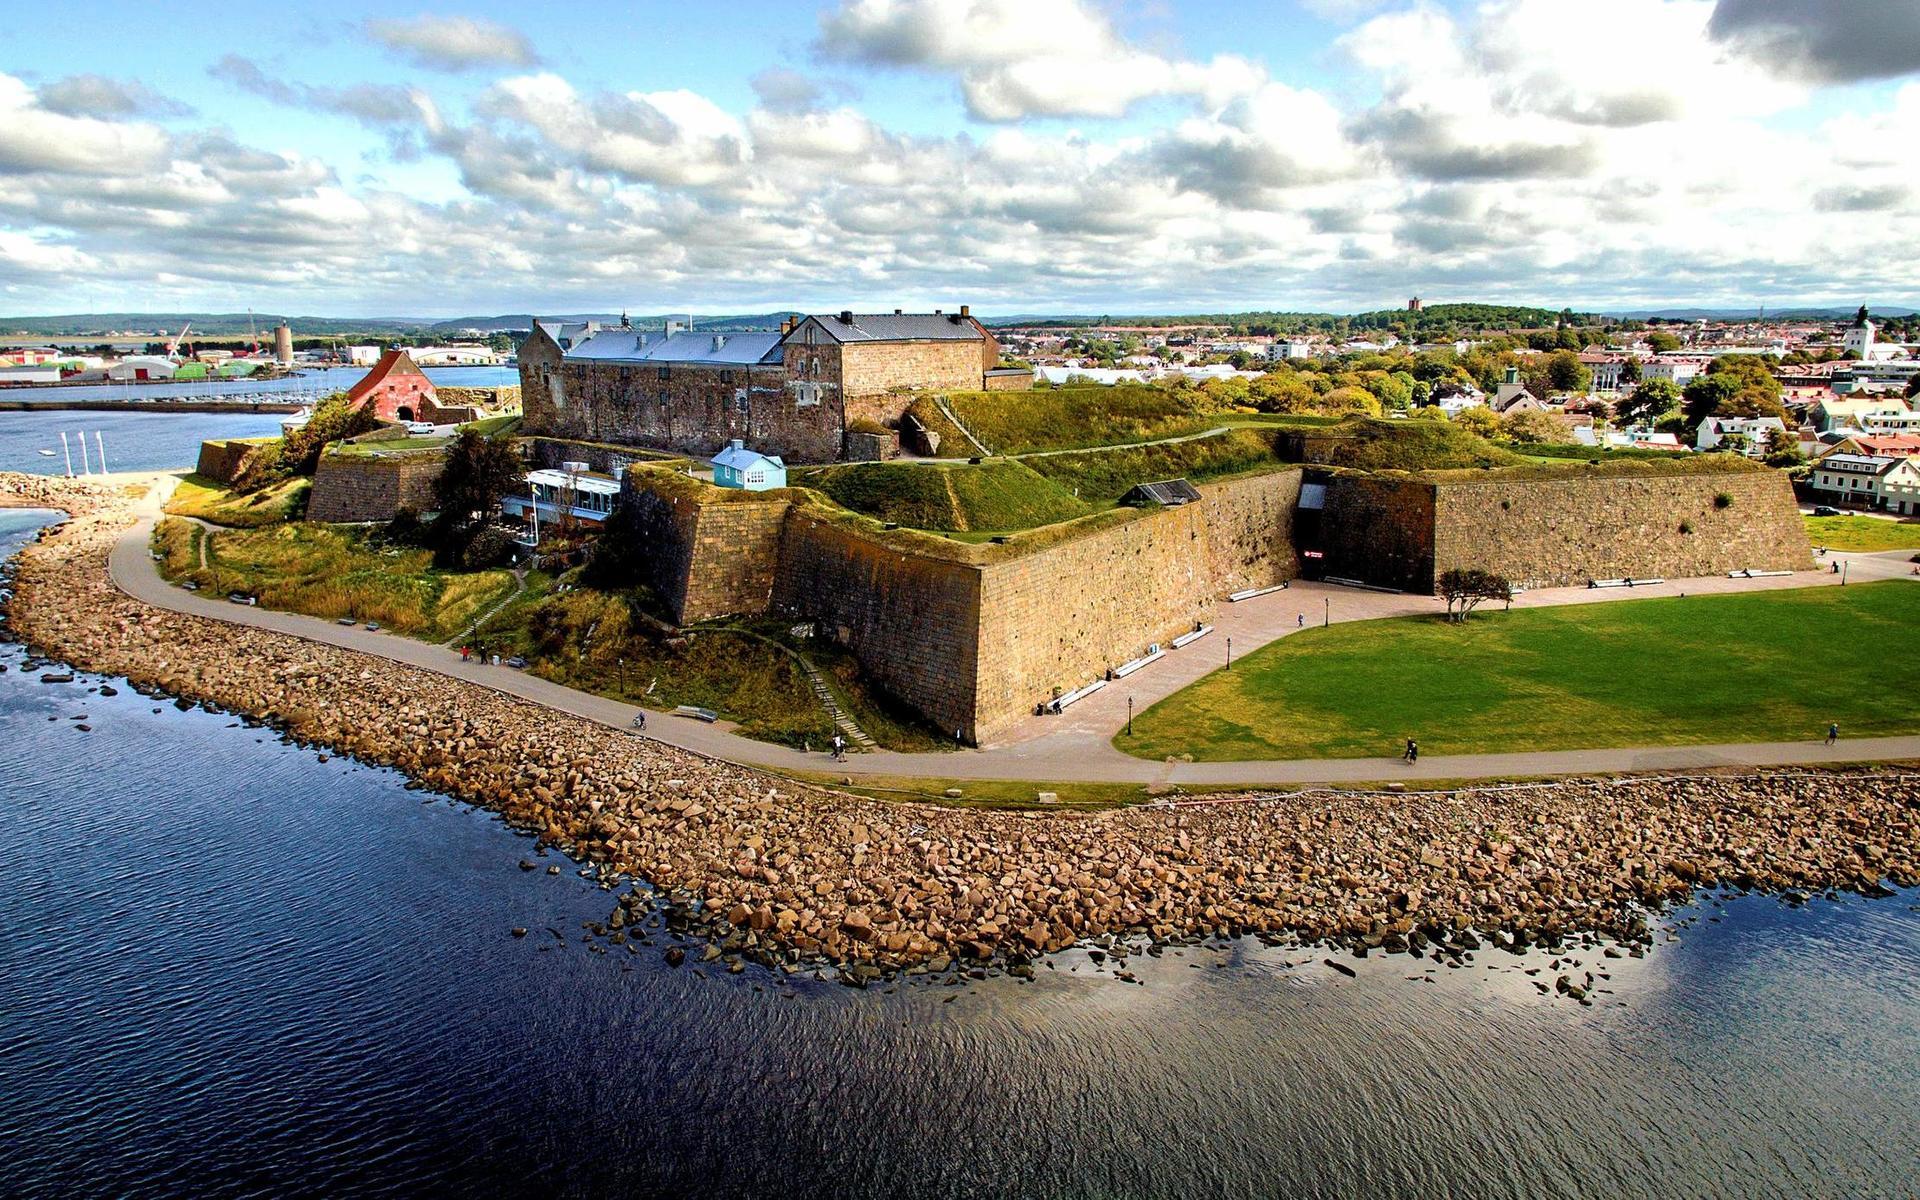 Besöken på Hallands kulturhistoriska museum på Varbergs fästning minskade med 35 procent under coronaåret 2020 jämfört med 2019.